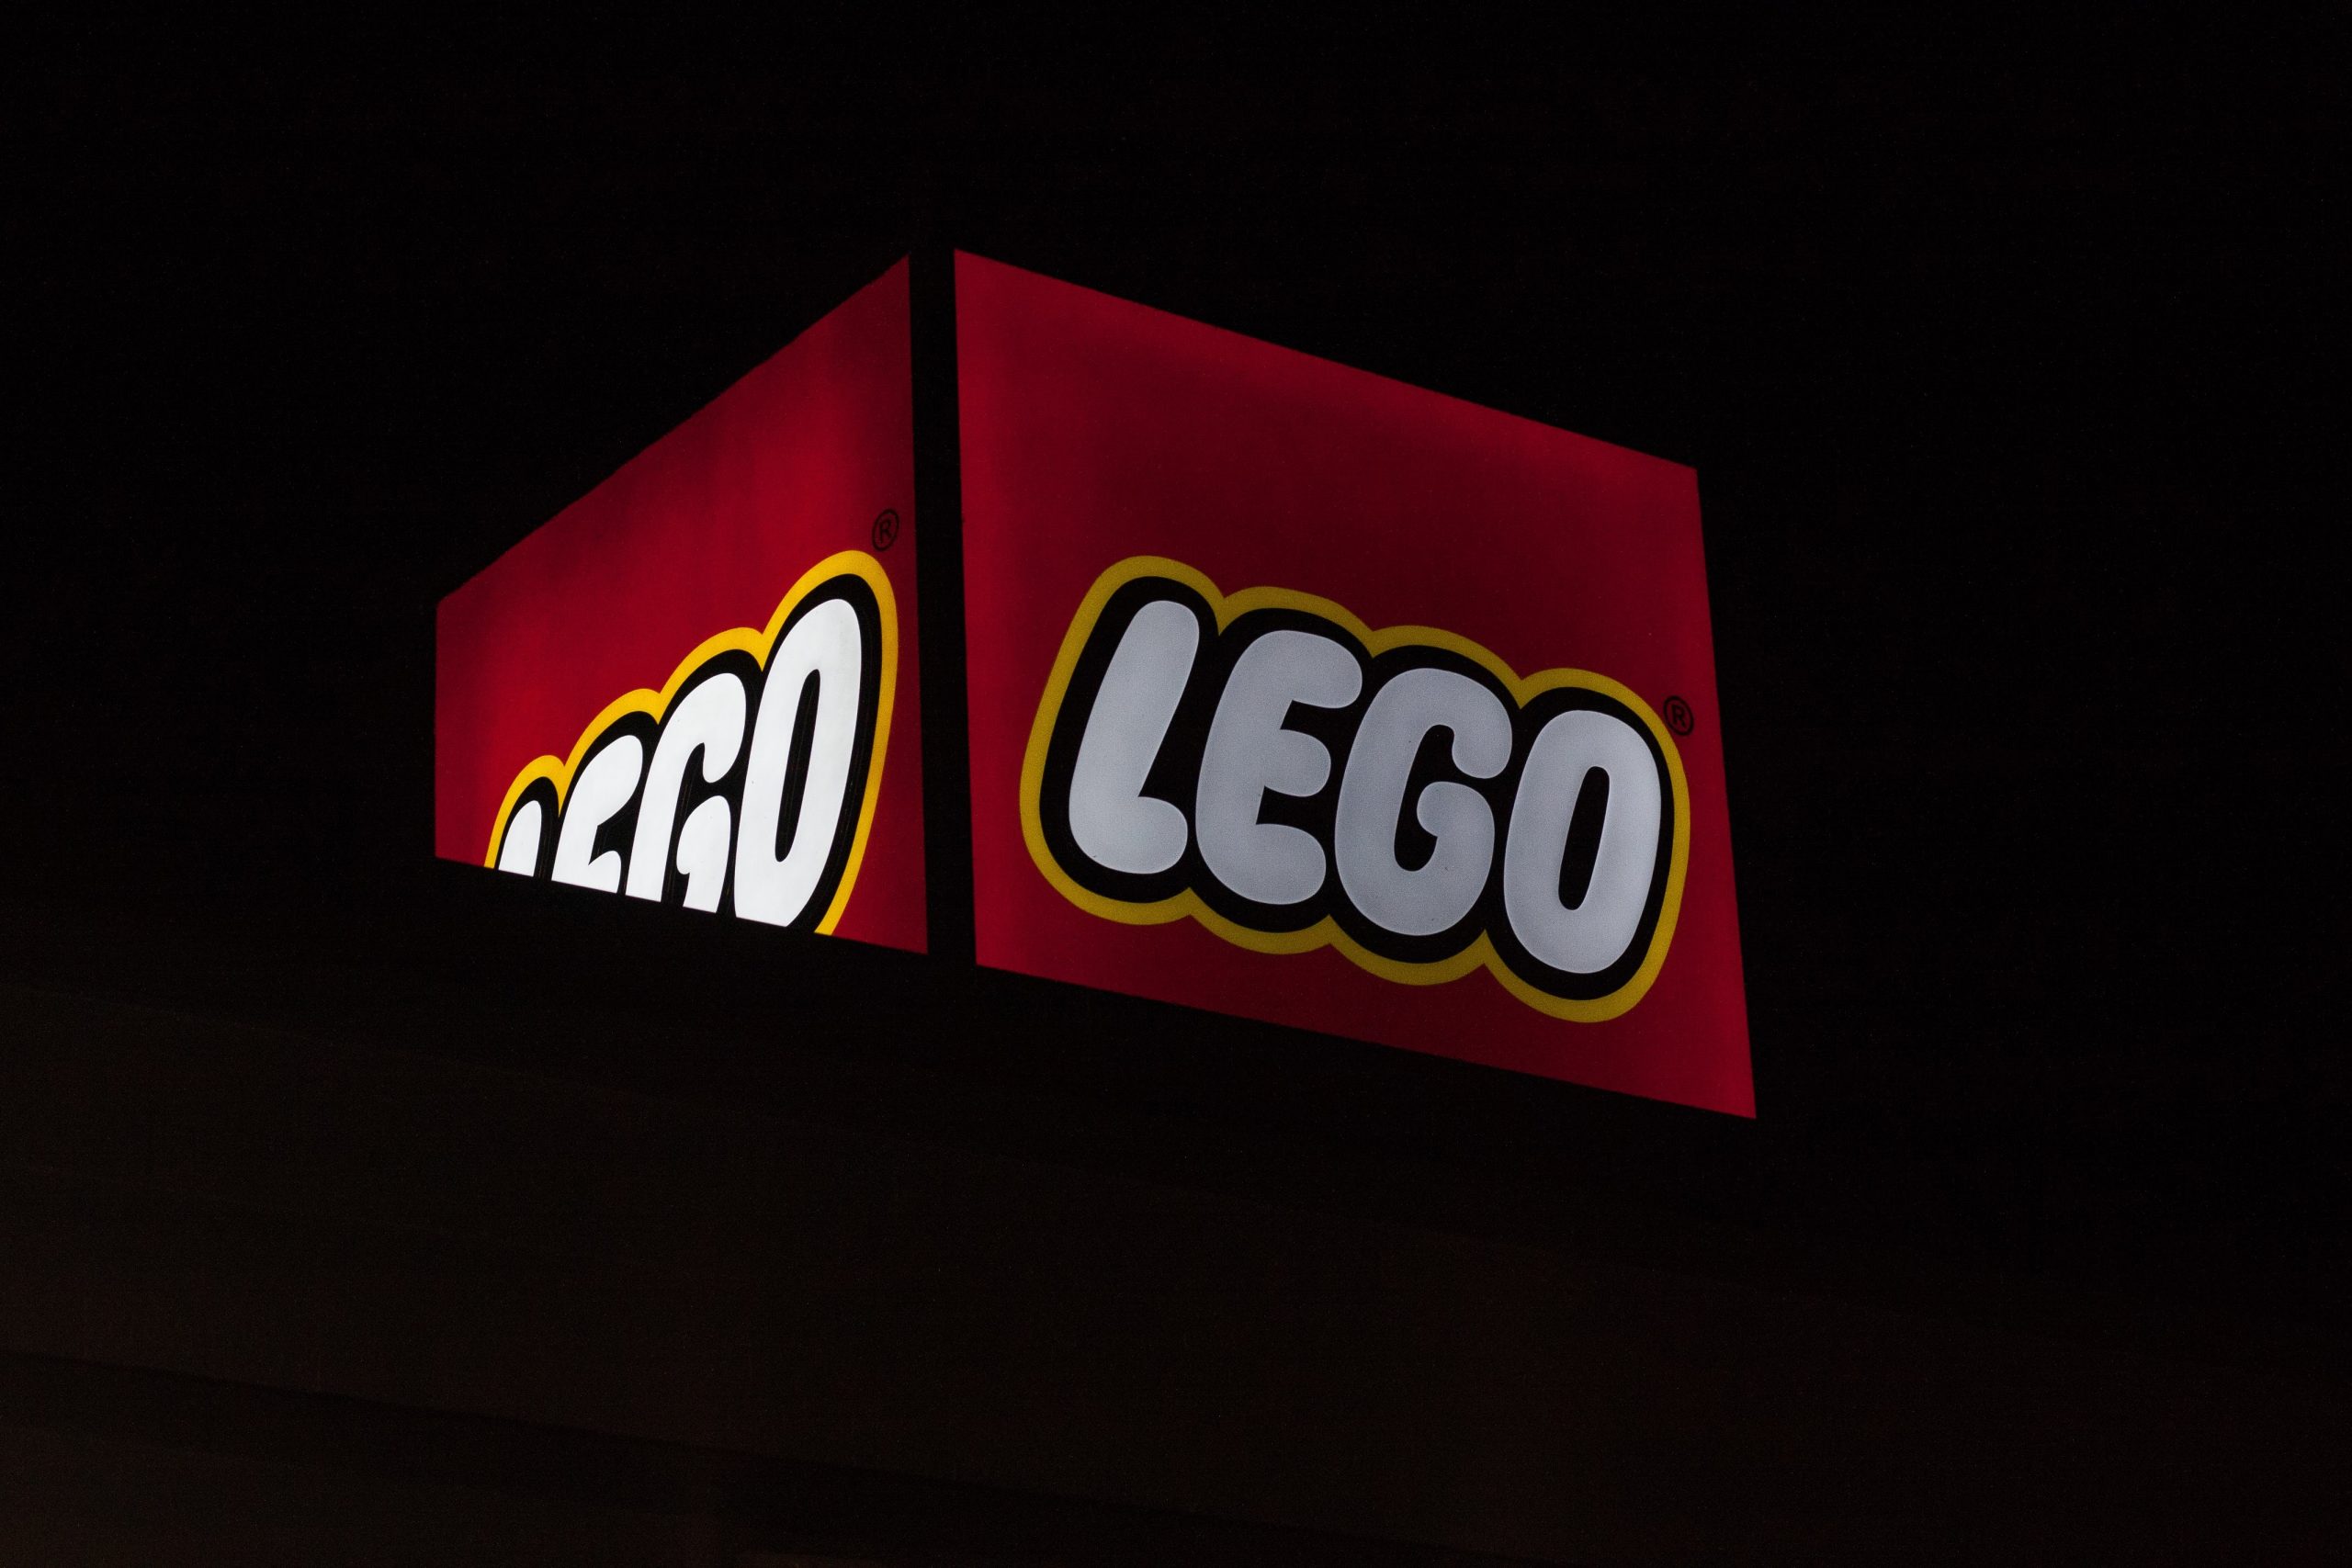 Overlegenhed dis mus LEGO A/S - Lokale Firmaer